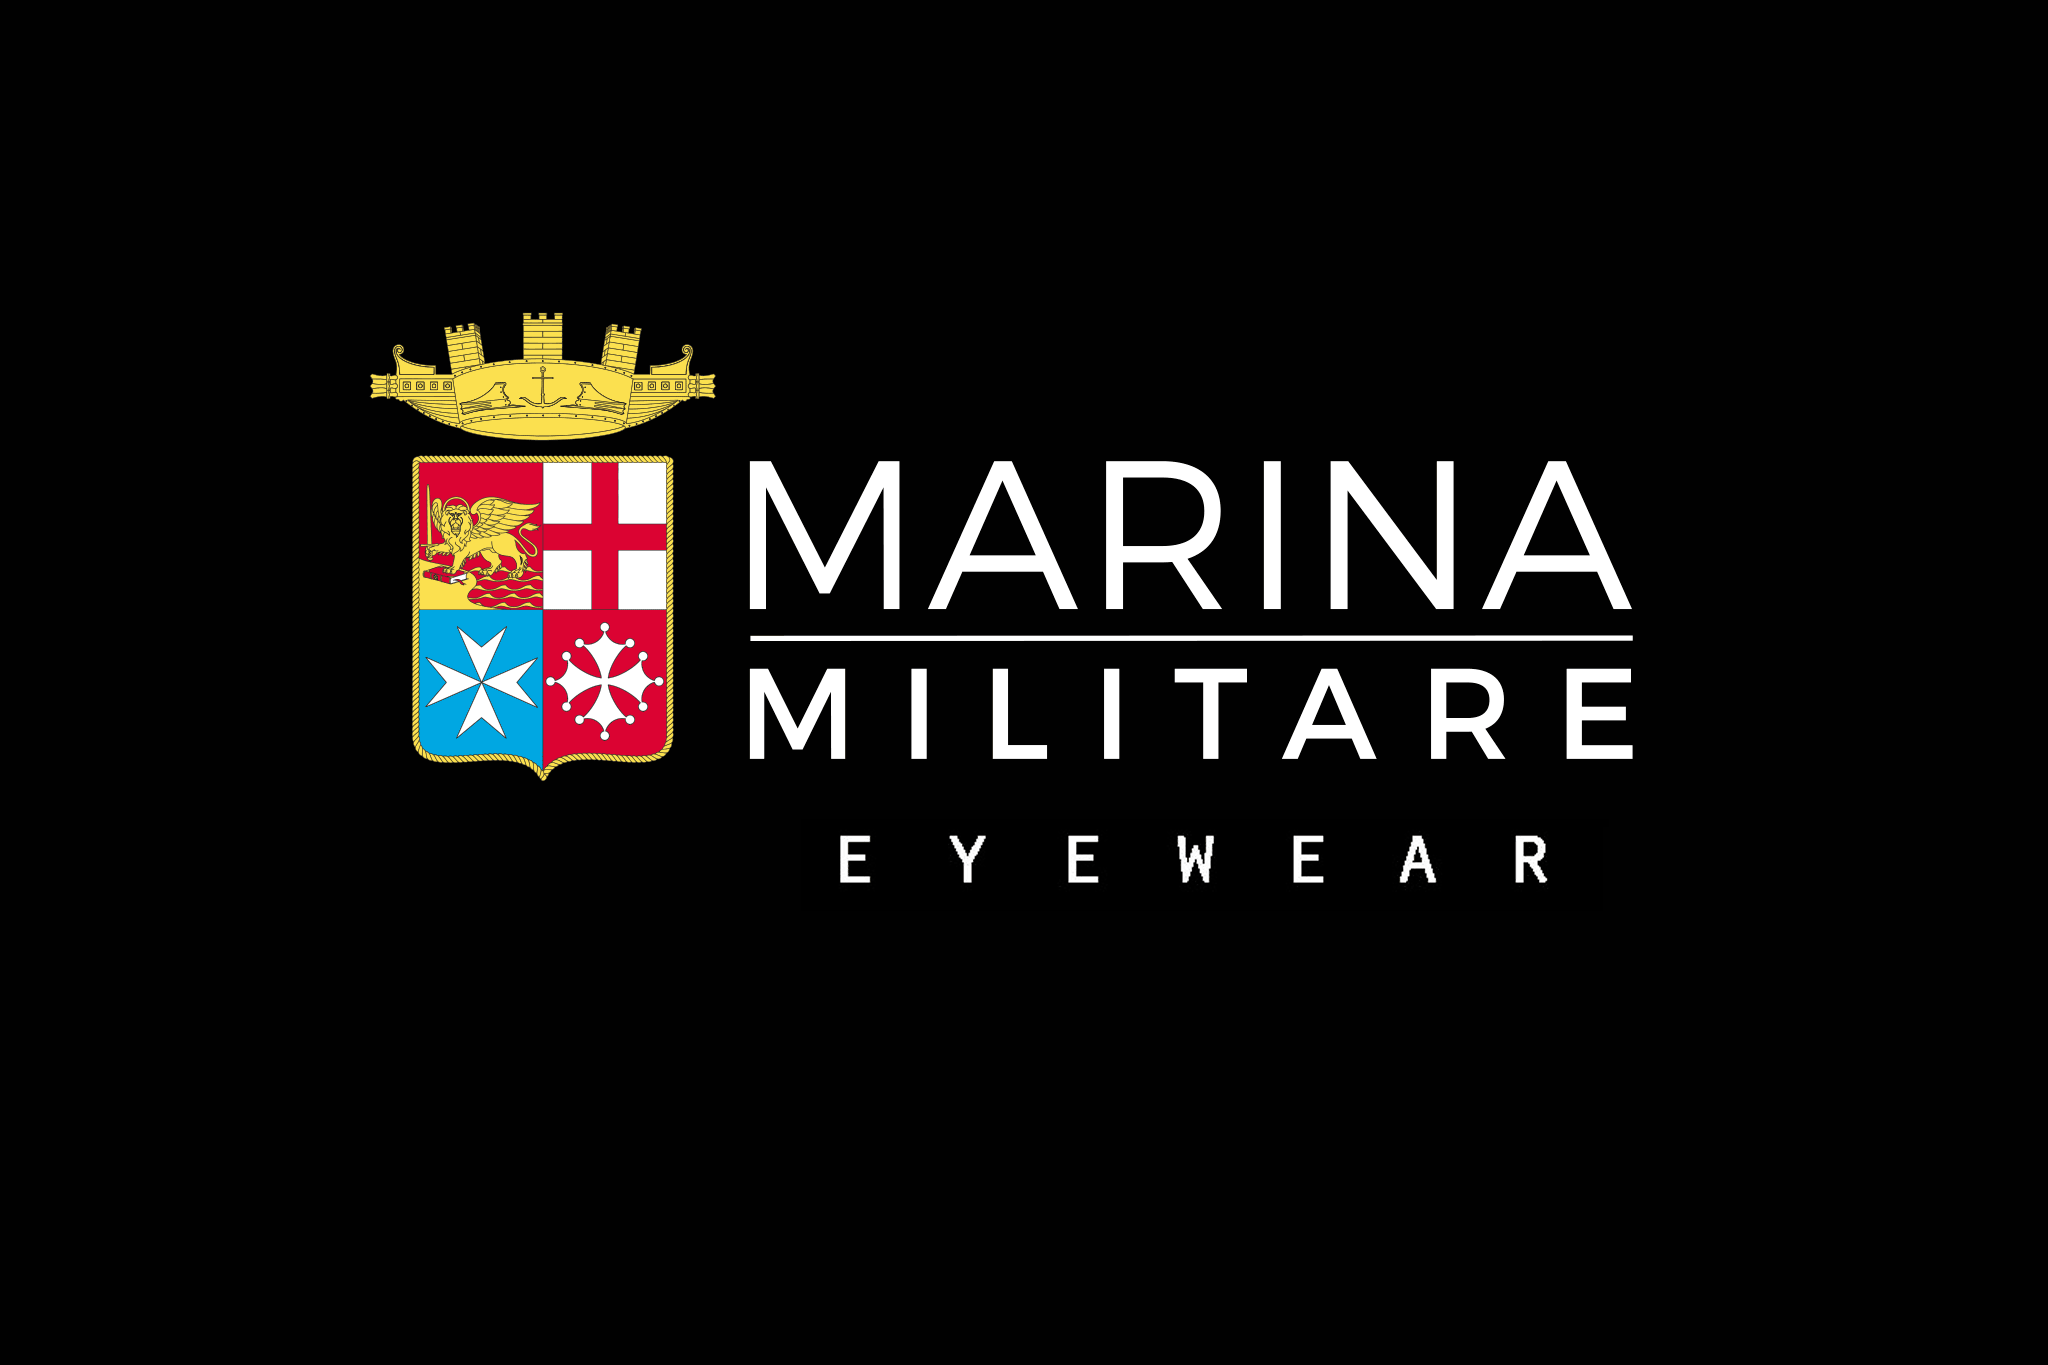 Official Partners of Marina Militare Italiana